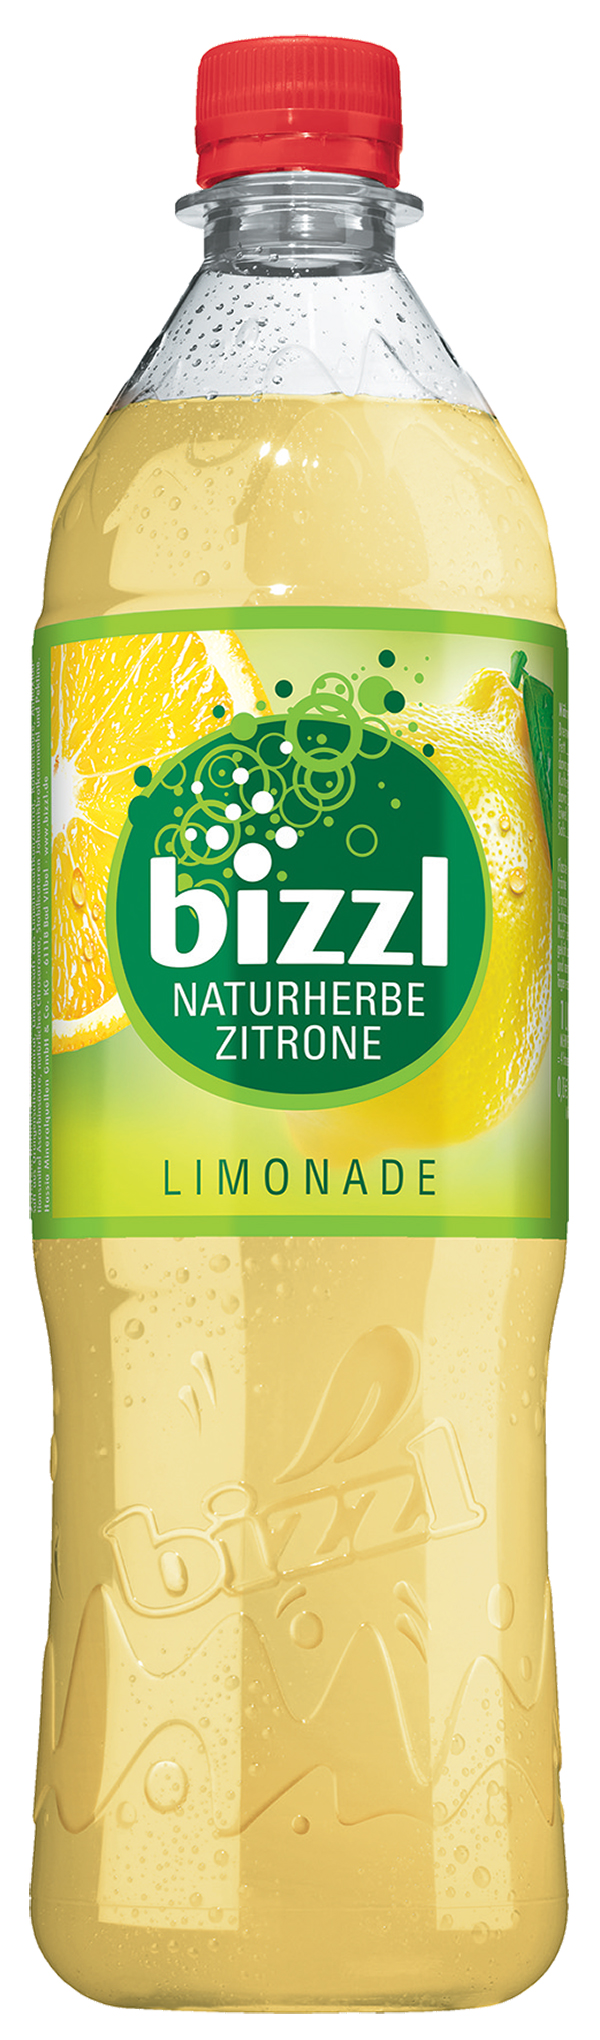 Bizzl Naturherb Zitrone 12 x 1,0 l (PET)